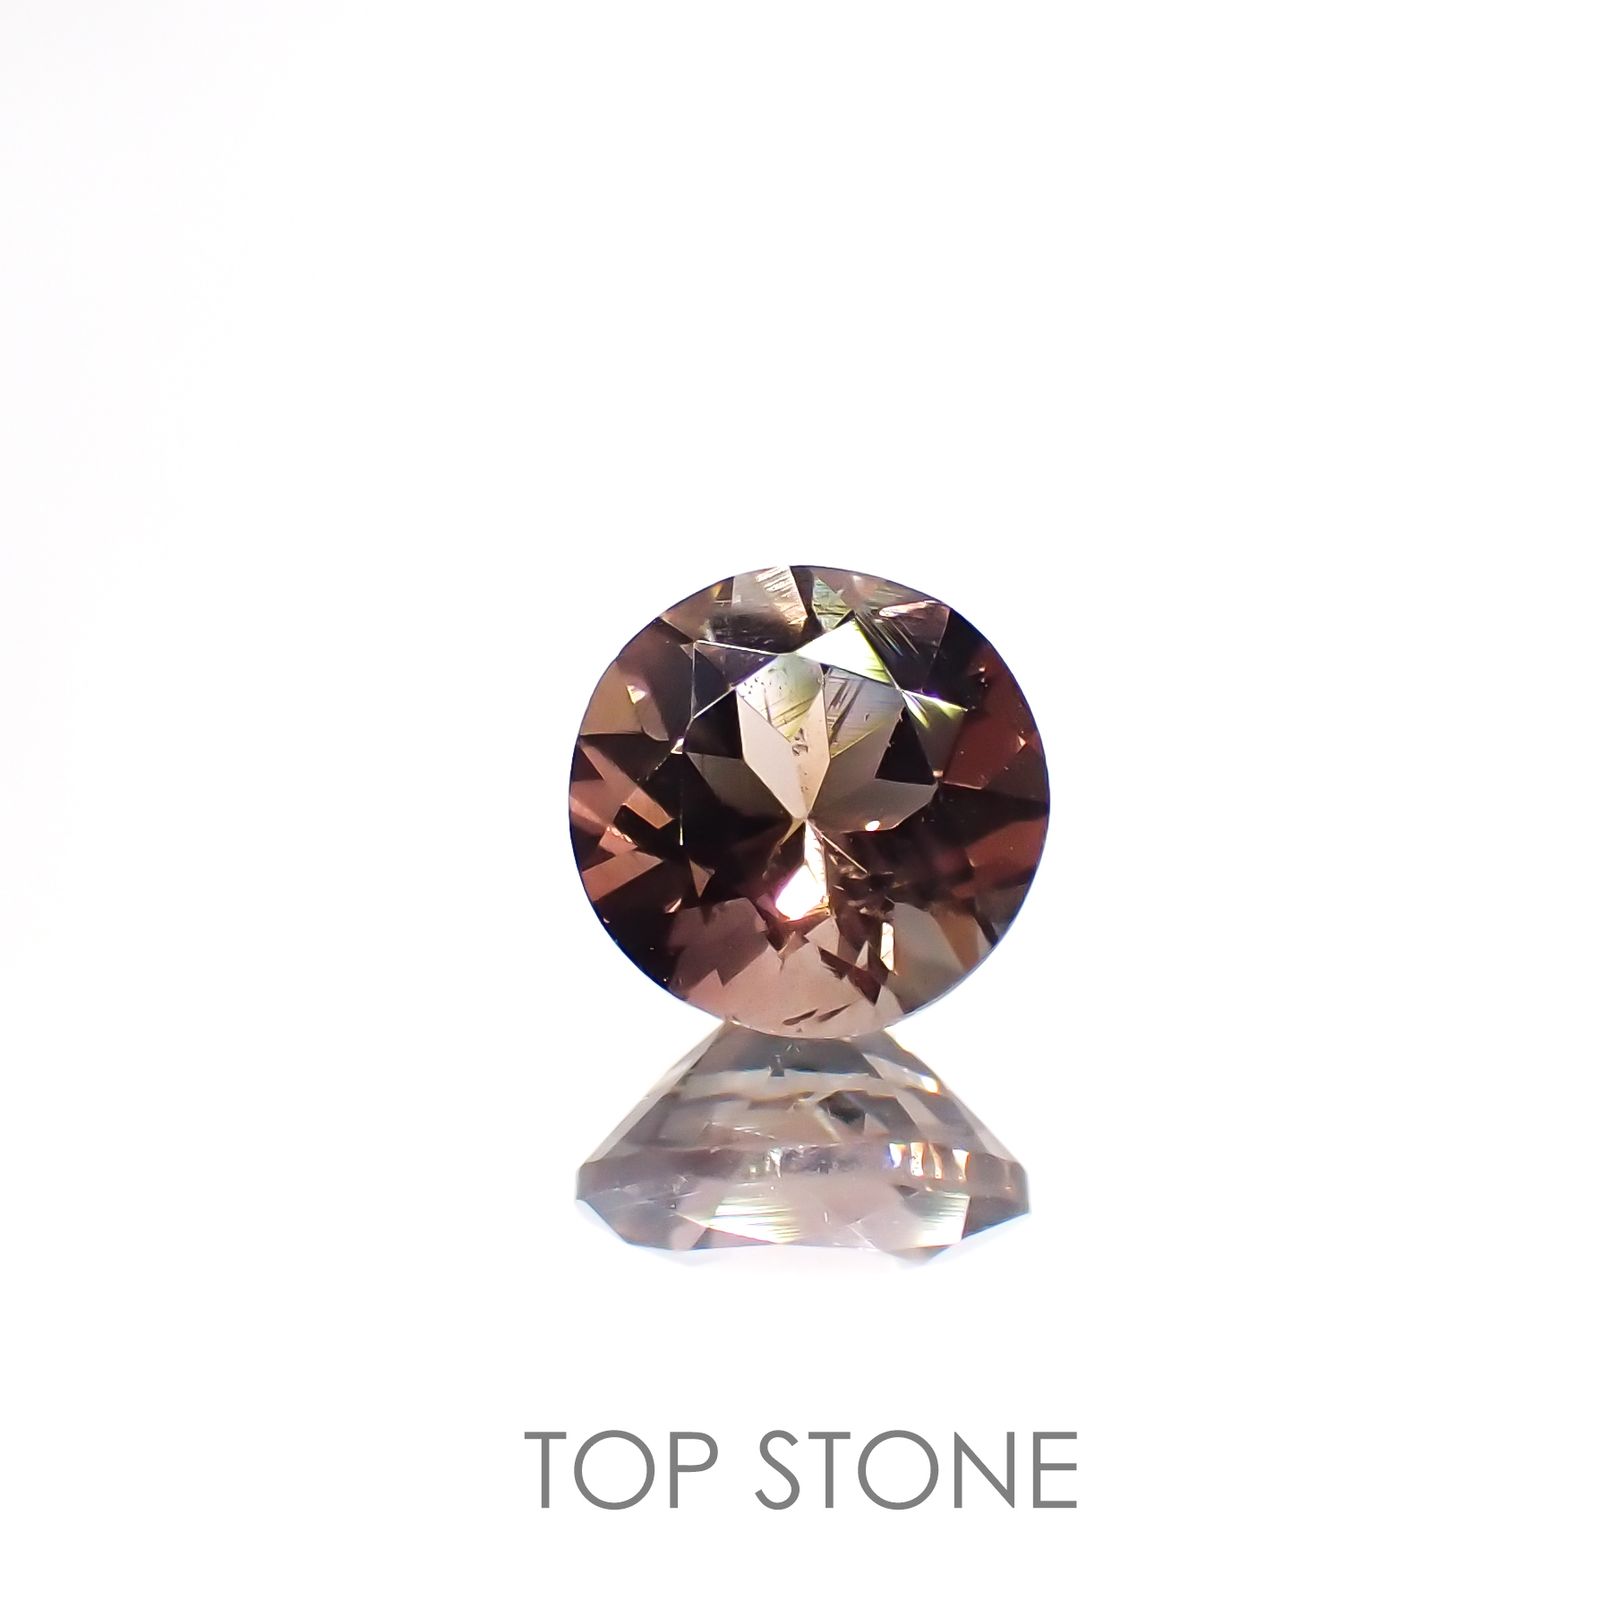 宝石名から探す / オレゴンサンストーン 通販 | TOP STONE(トップストーン)